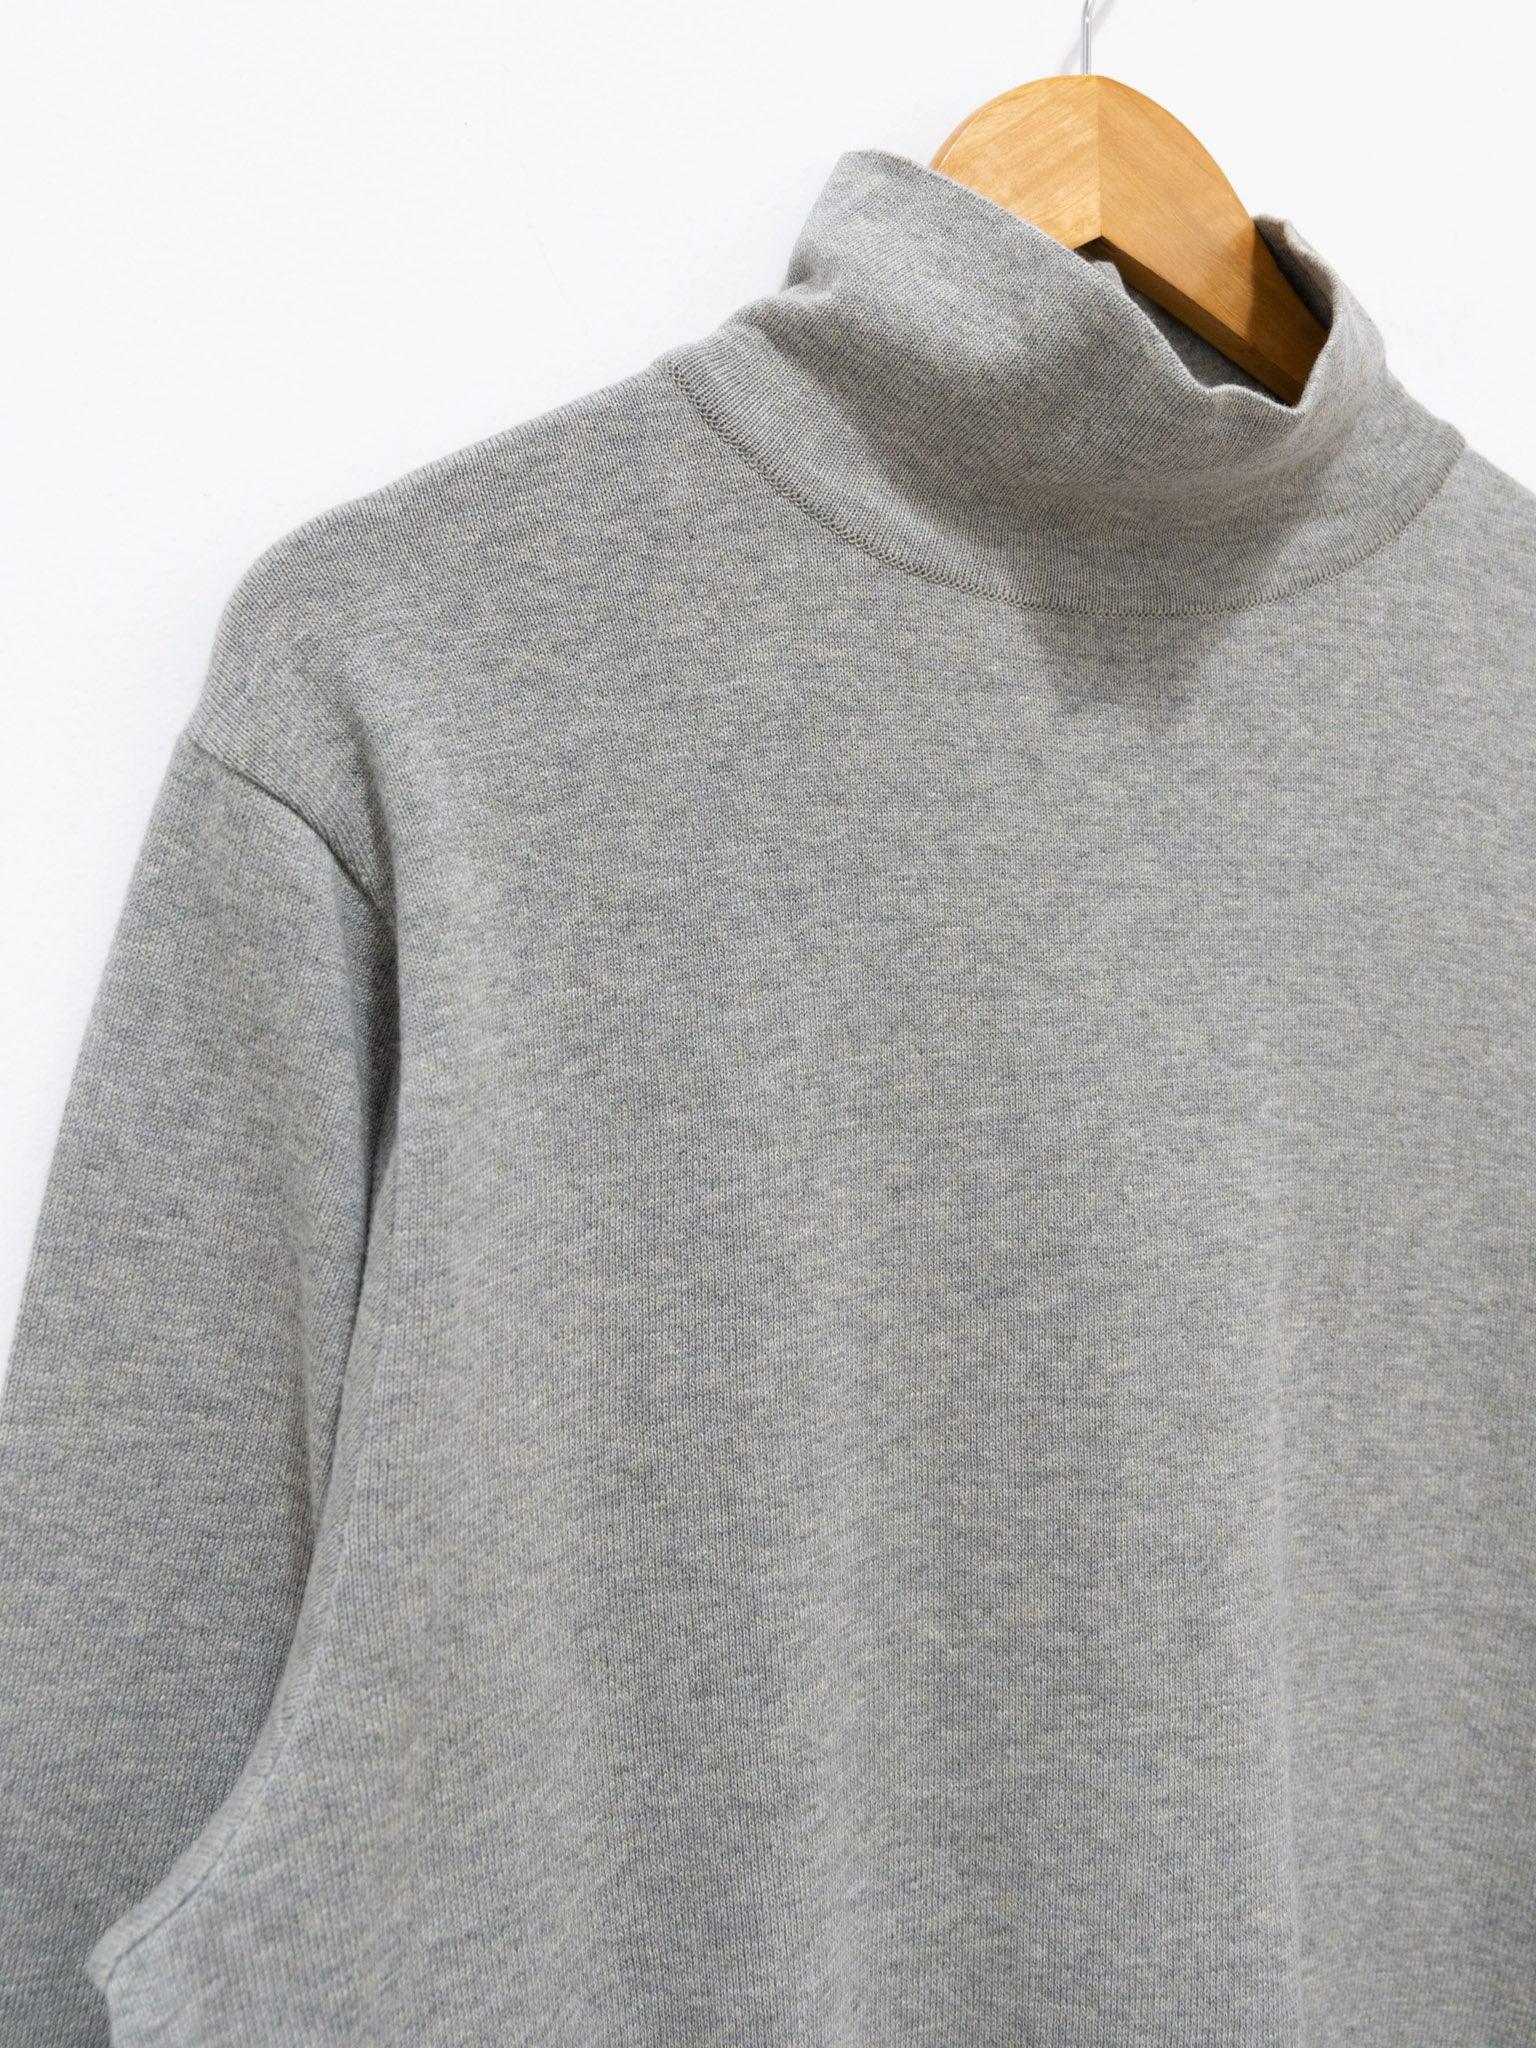 Namu Shop - Fujito Turtleneck Knit T-Shirt - Light Gray